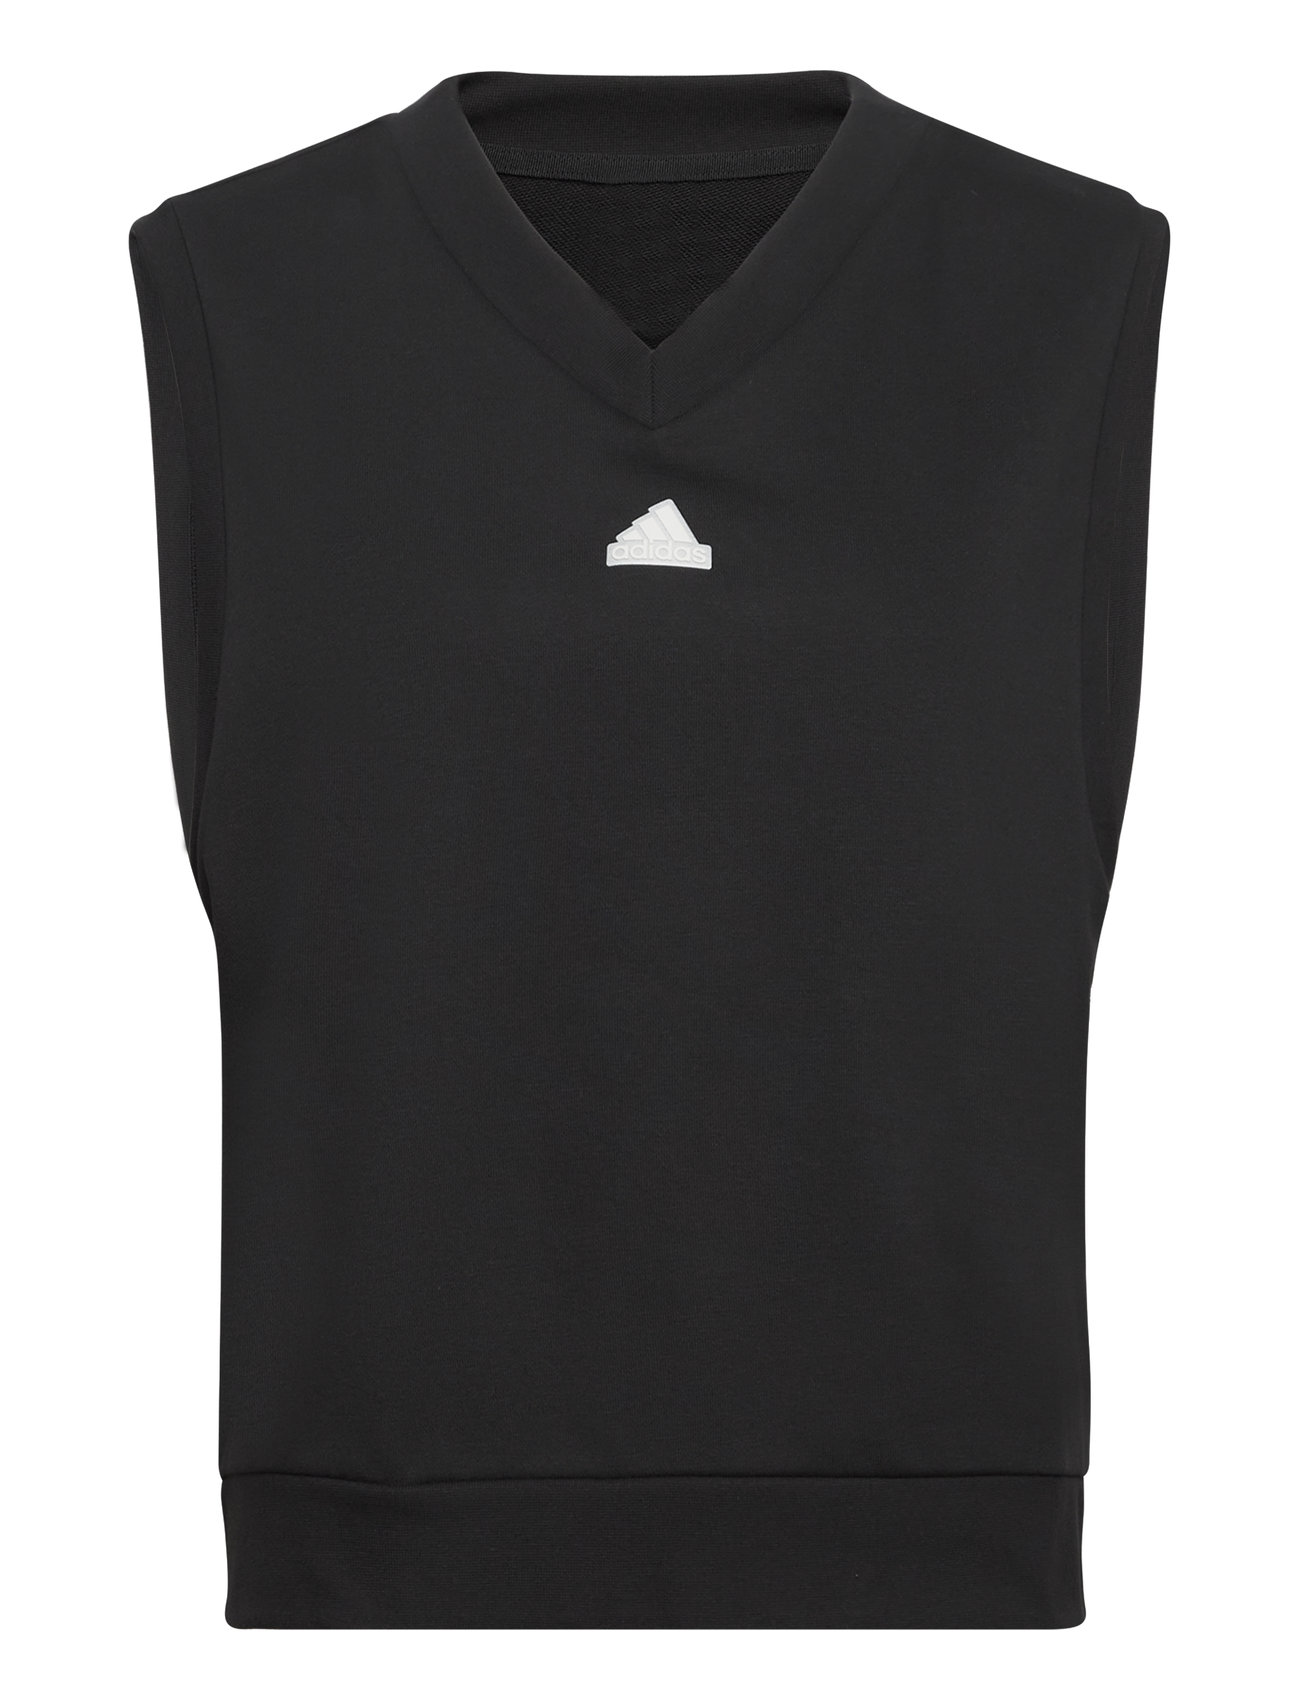 W Bluv Q1 Vest Sport T-shirts & Tops Sleeveless Black Adidas Sportswear